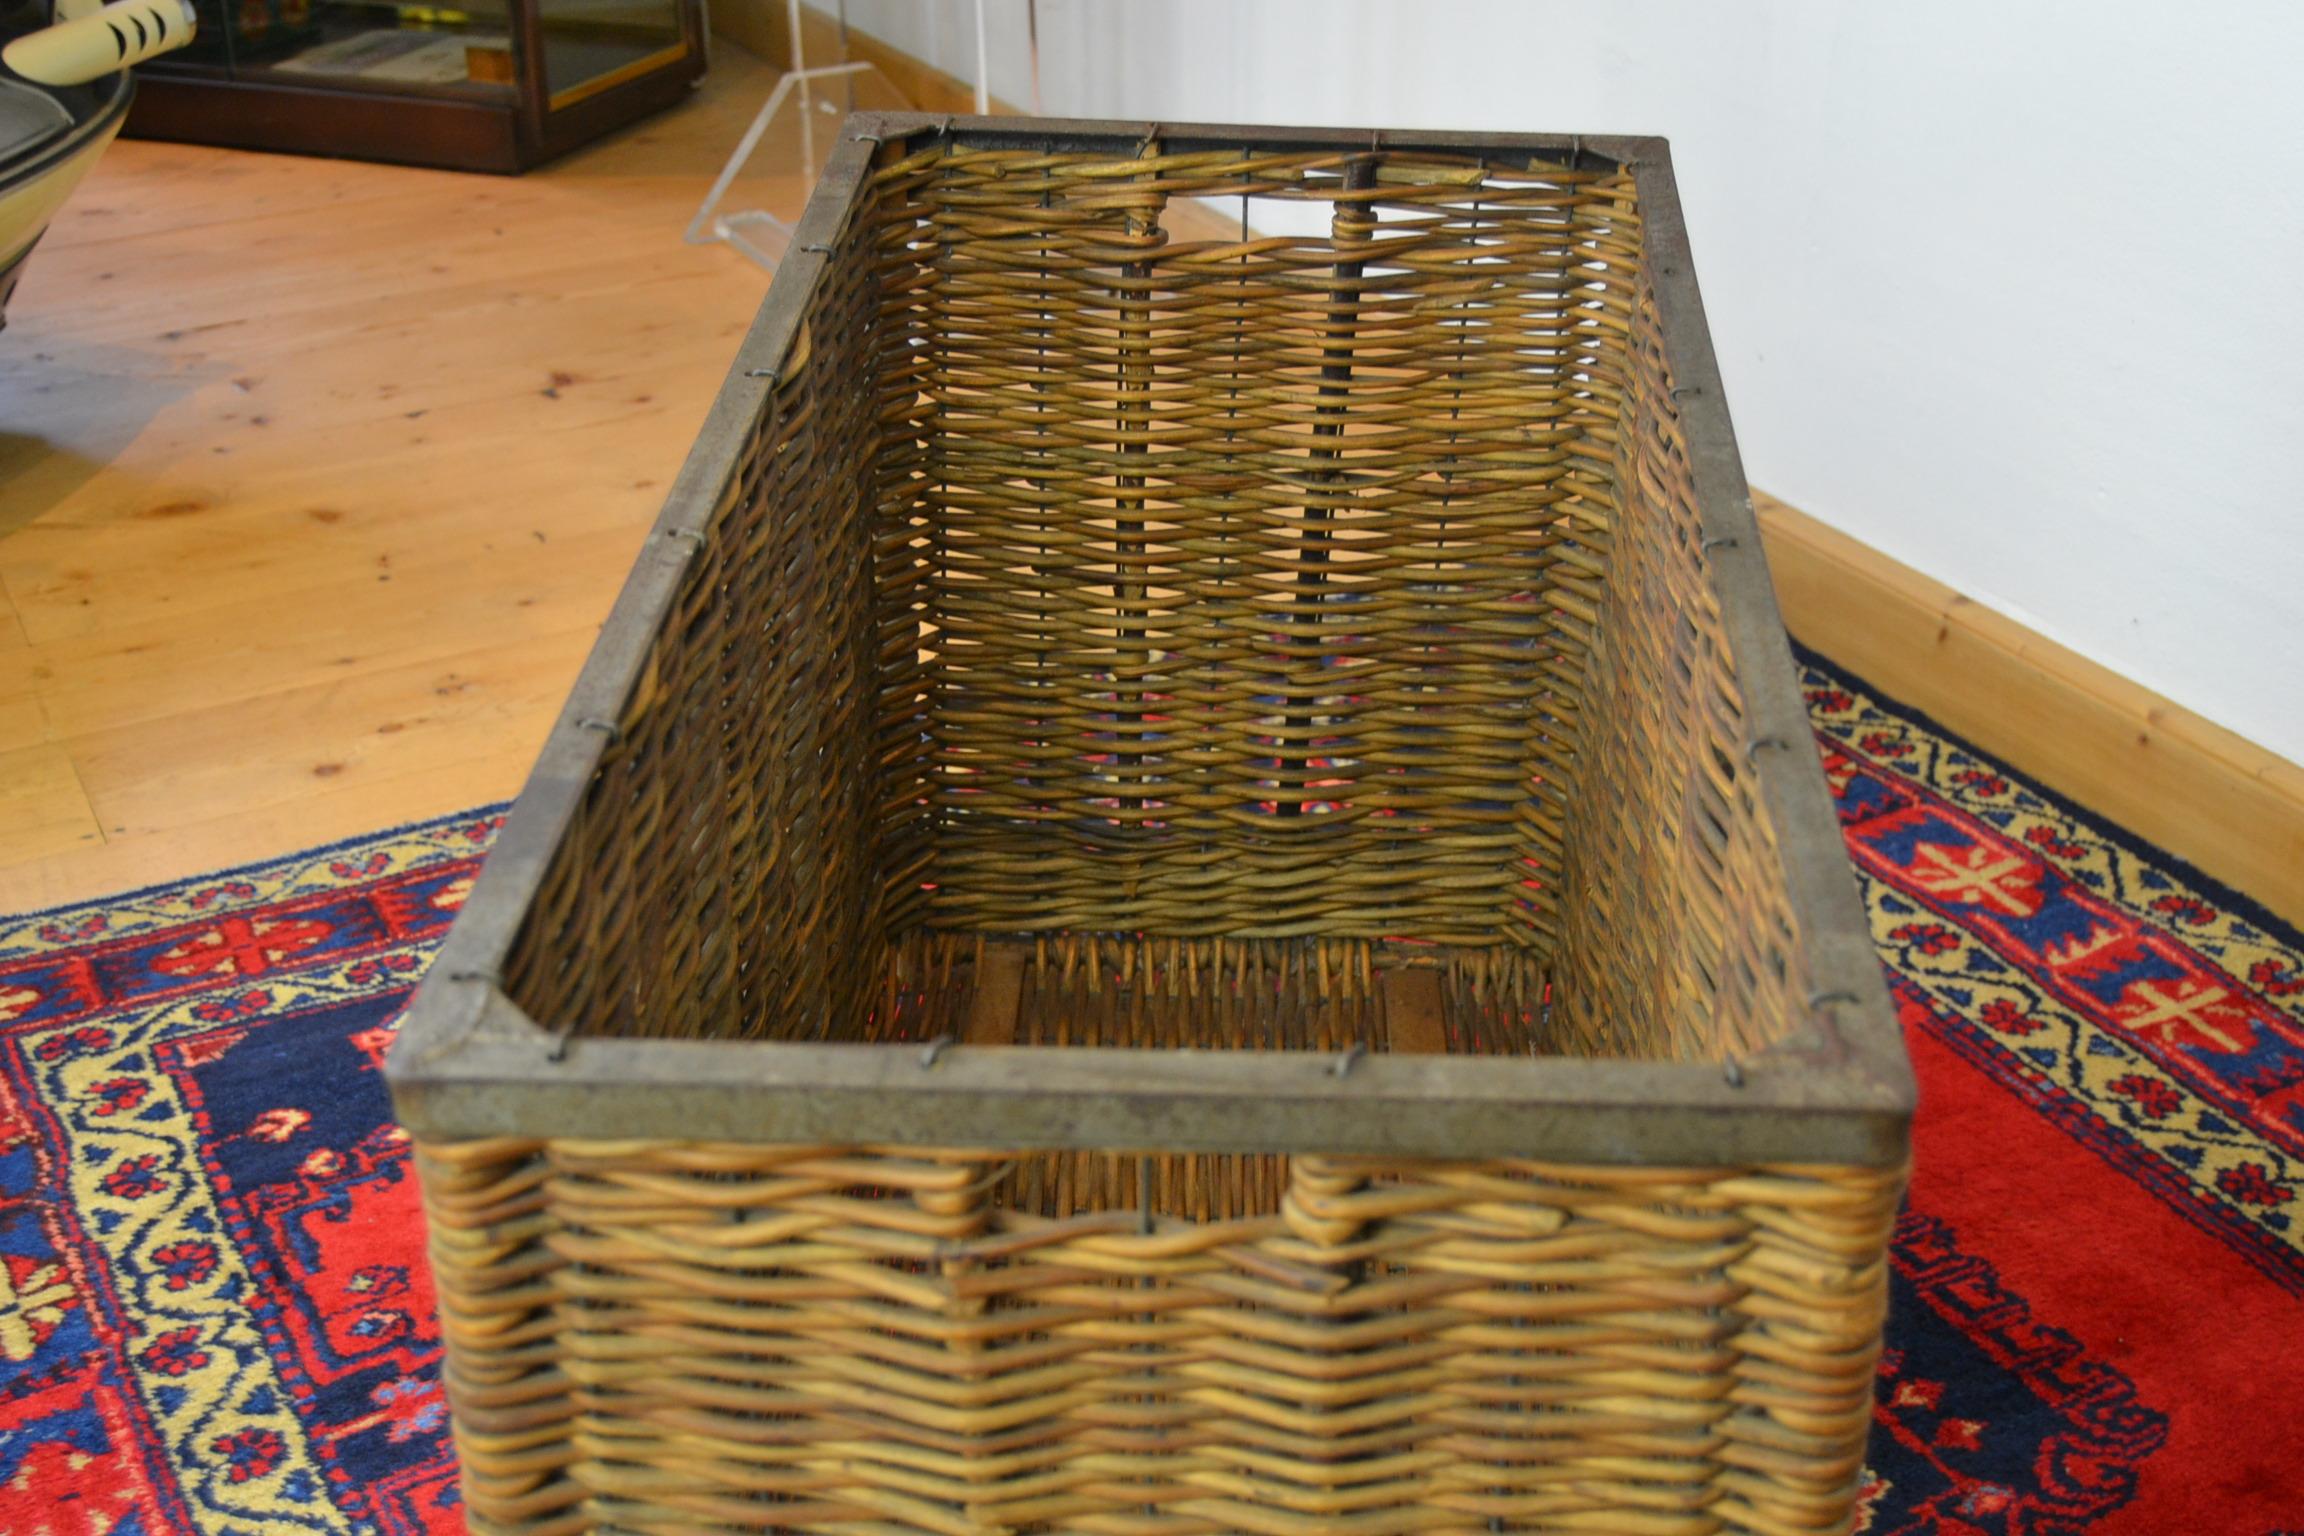 European Antique Wicker Factory Basket on Wheels